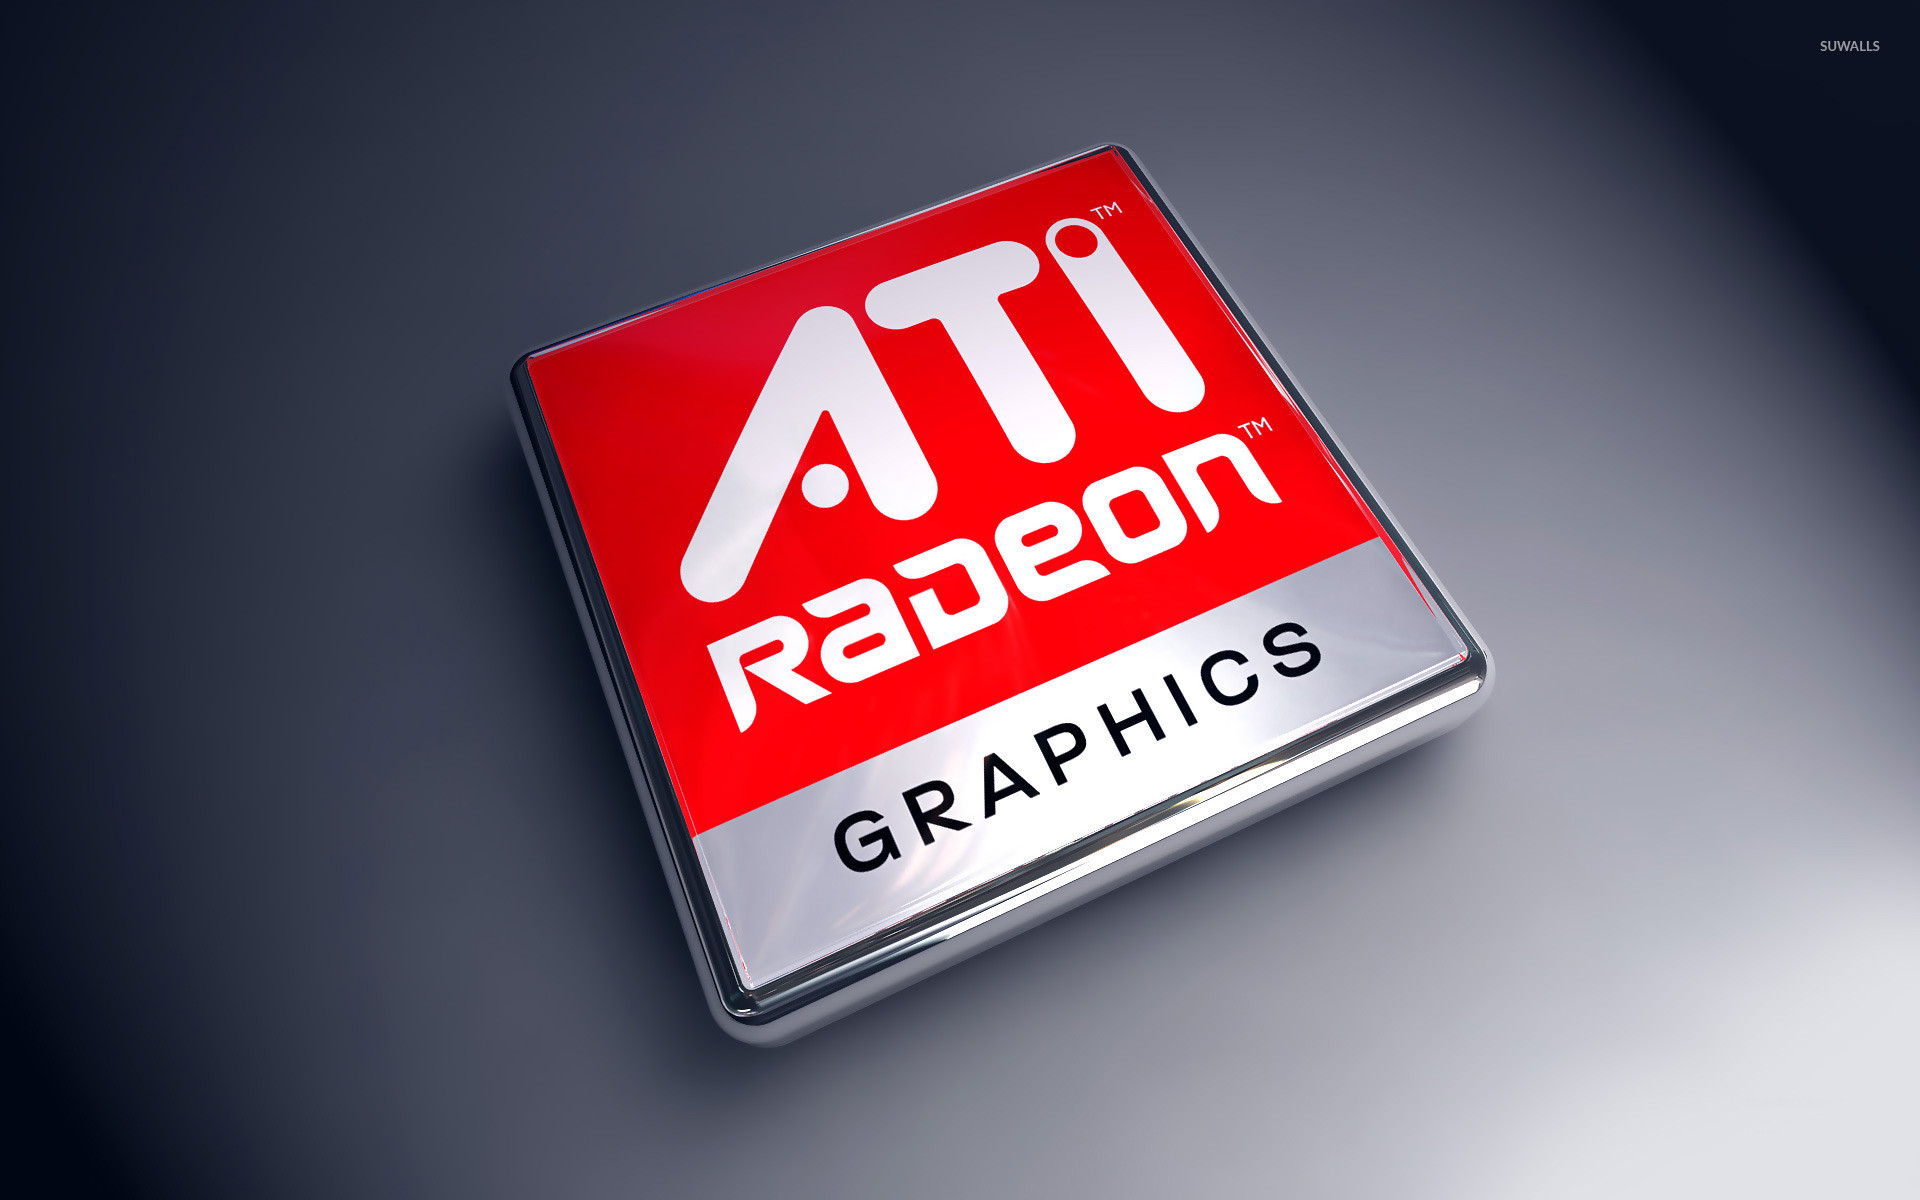 AMD Radeon wallpaper jpg